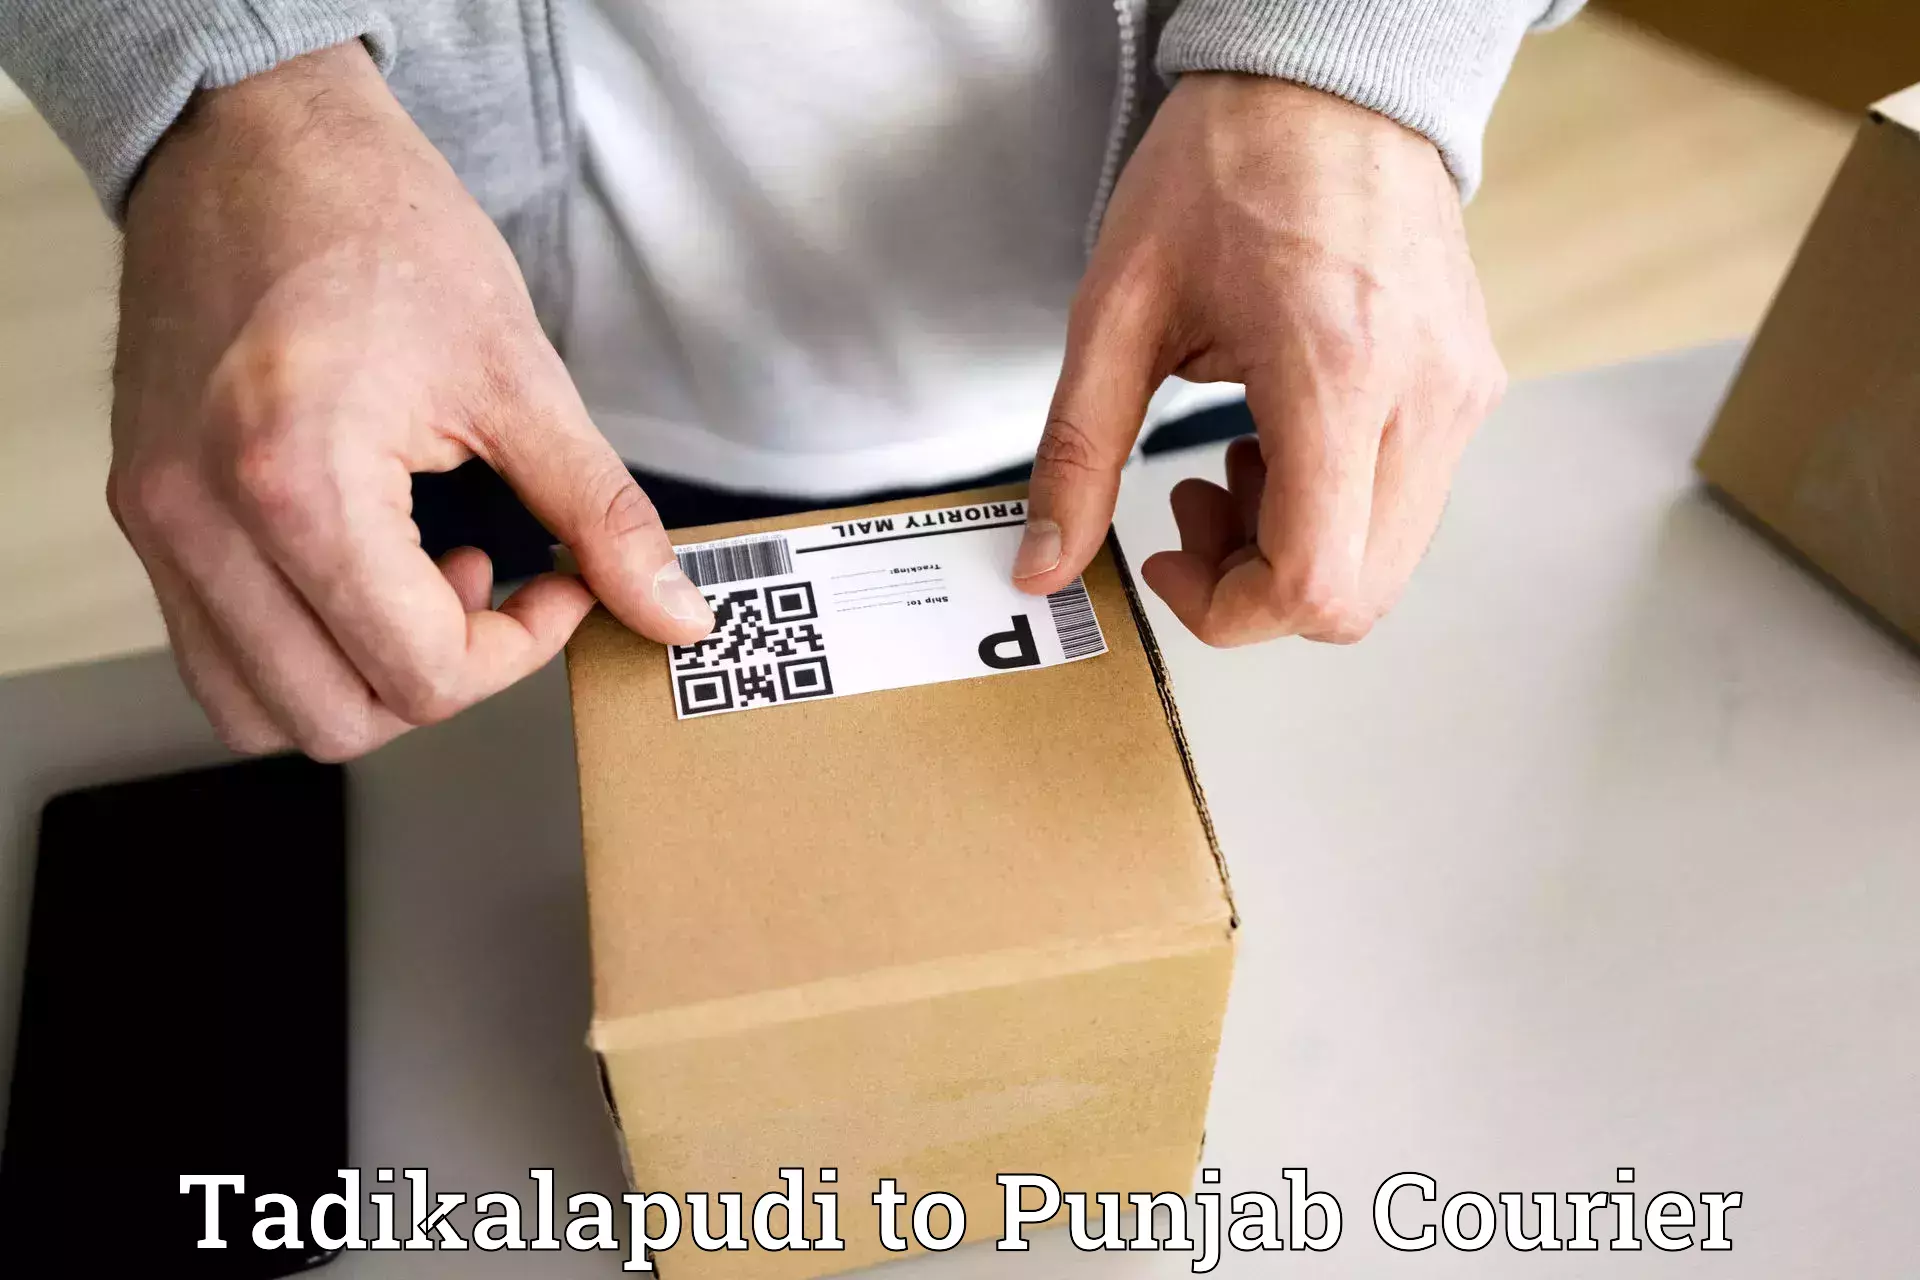 24/7 courier service Tadikalapudi to Rupnagar